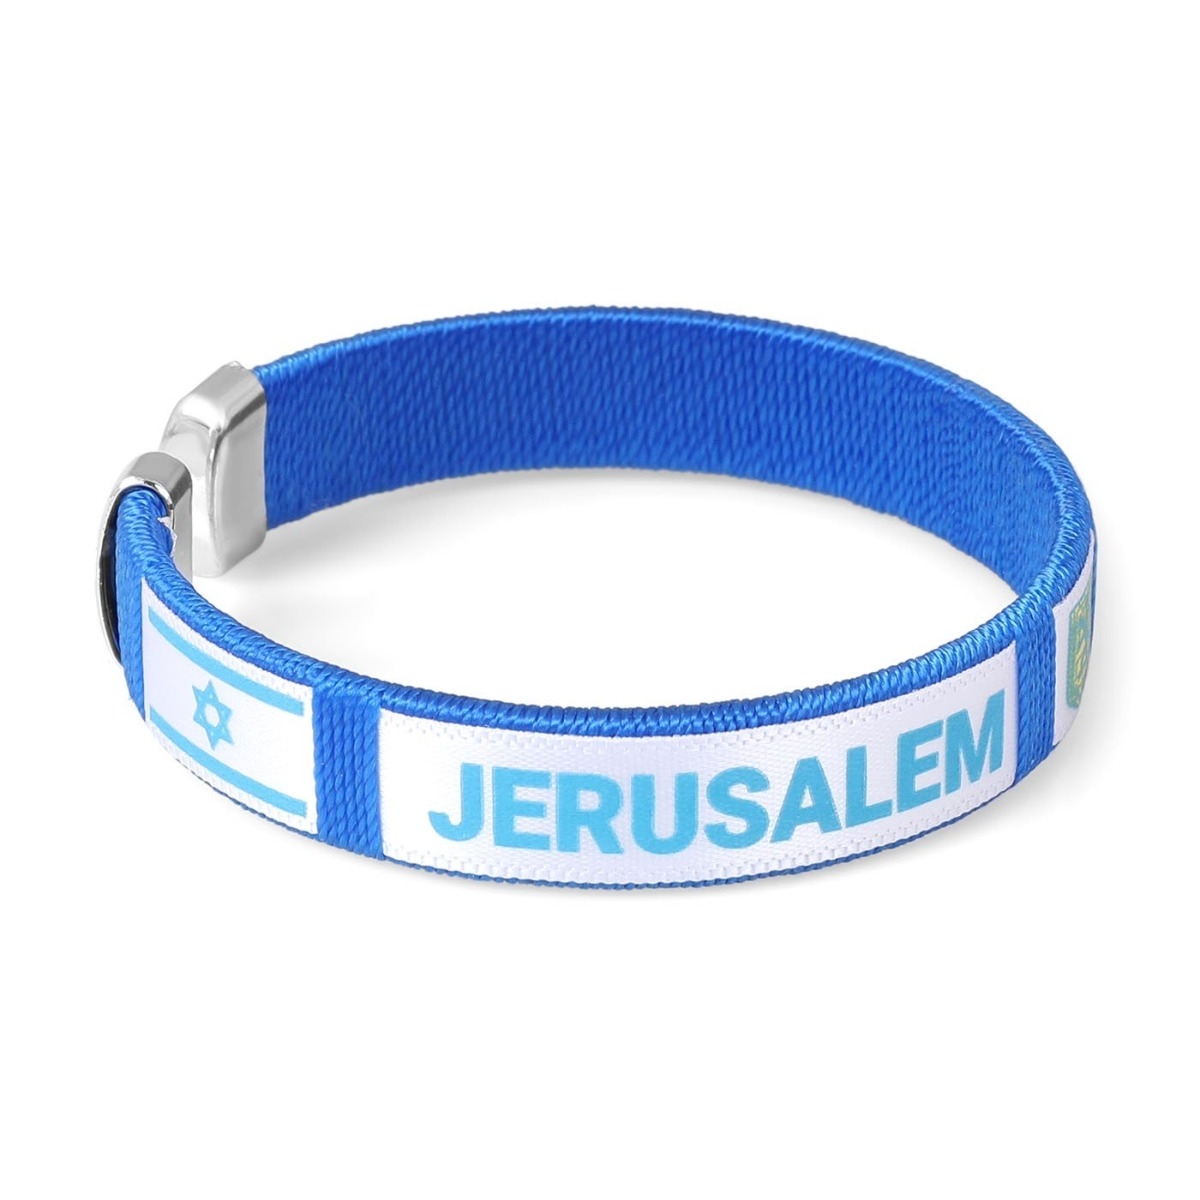 Blue Bracelet With Jerusalem Emblem and Israeli Flag - 1